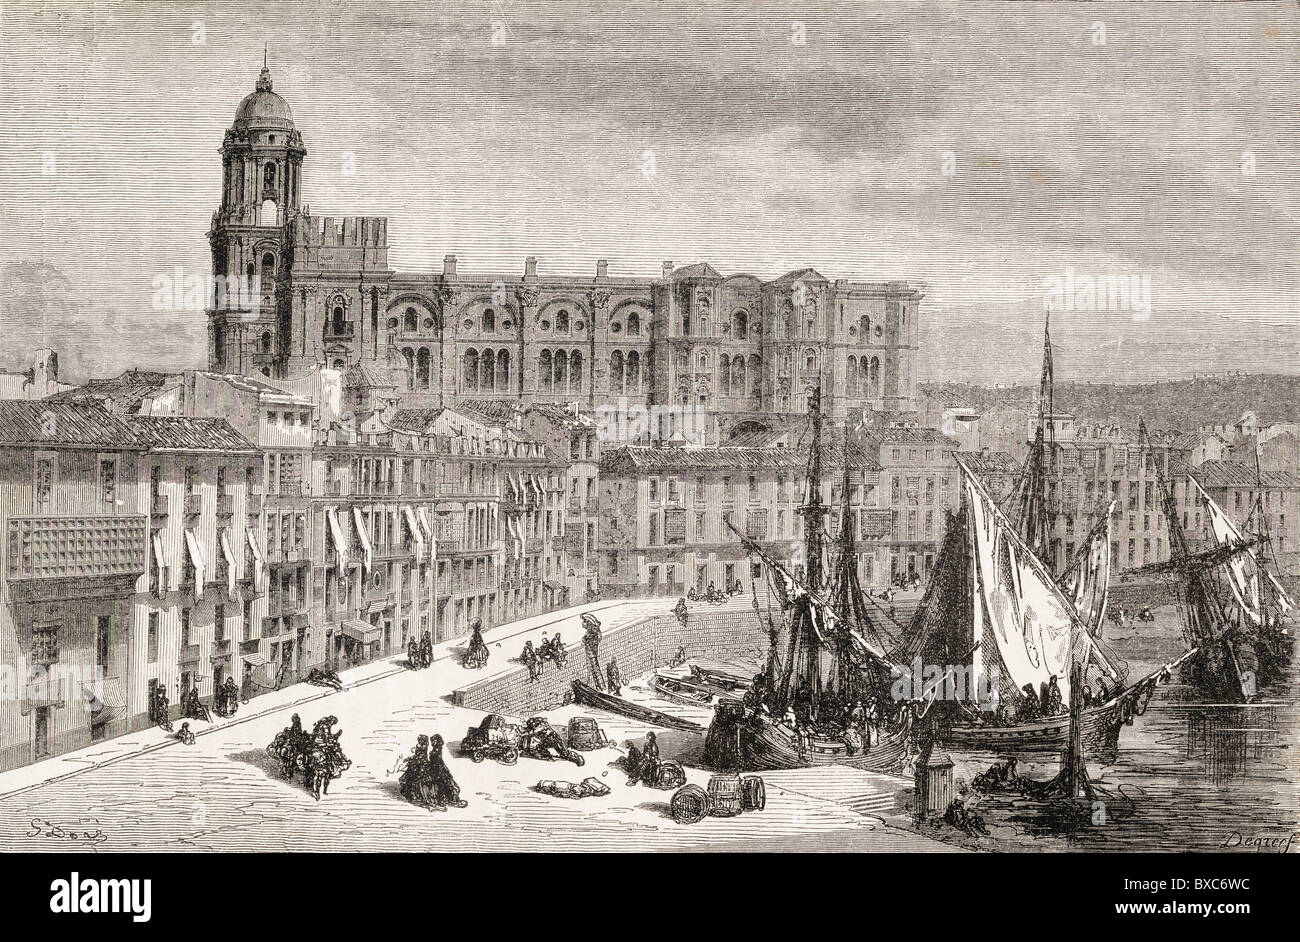 Vue sur le port et la cathédrale de Malaga, en Espagne, au cours du xixe siècle. Banque D'Images